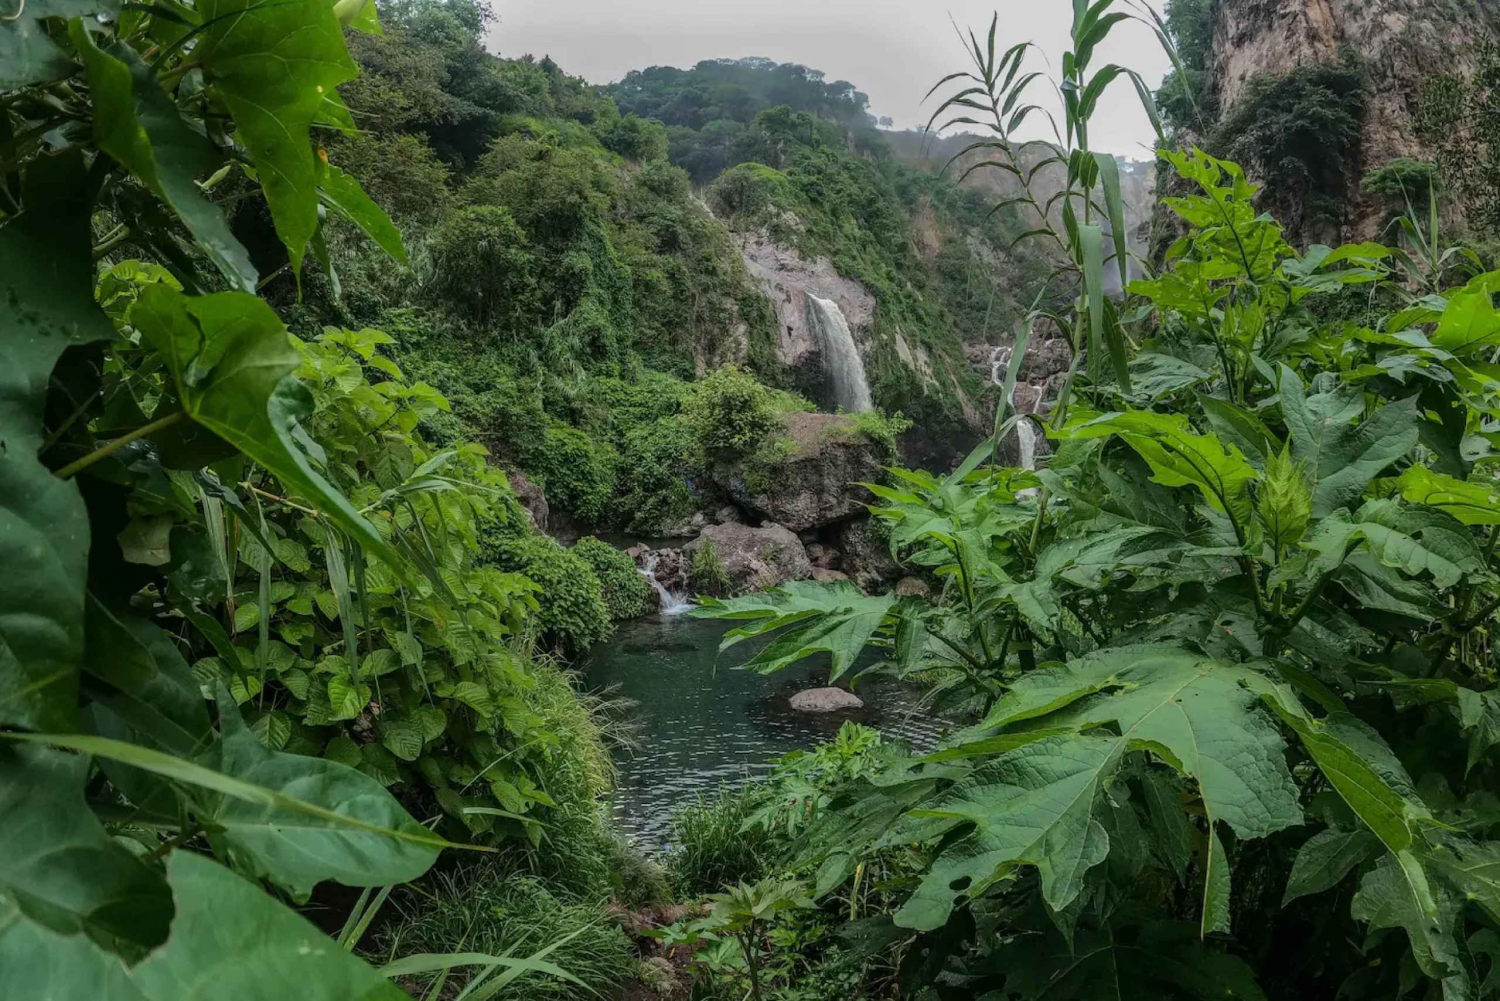 Visit lush springs and waterfalls near Guadalajara